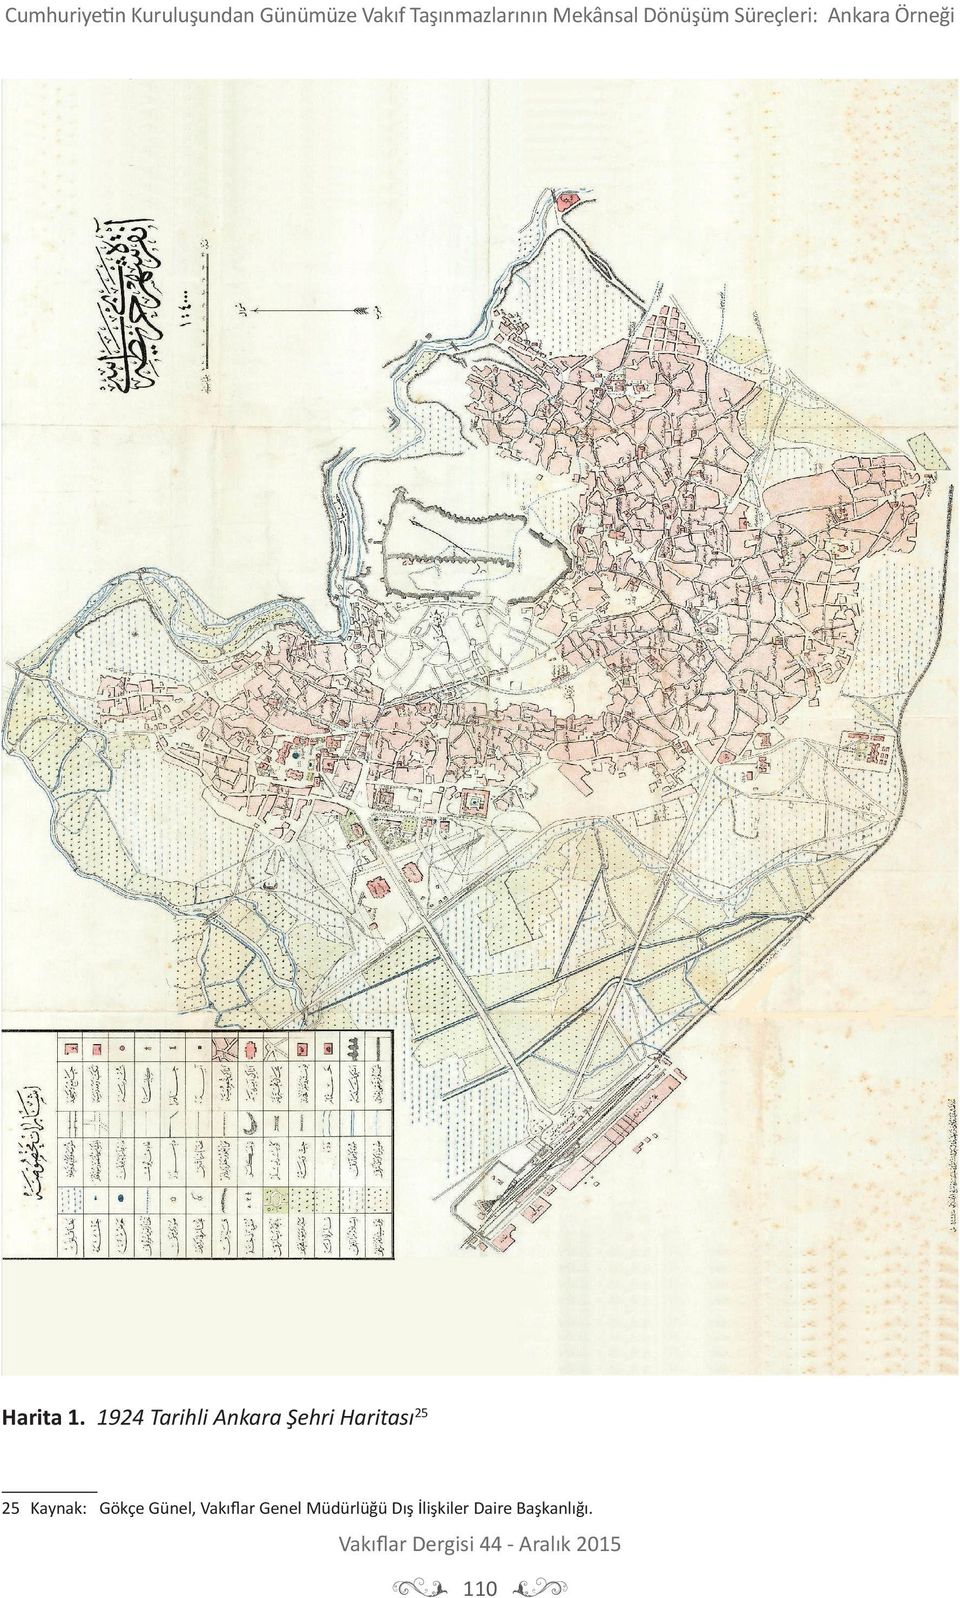 1924 Tarihli Ankara Şehri Haritası25 25 Kaynak: Gökçe